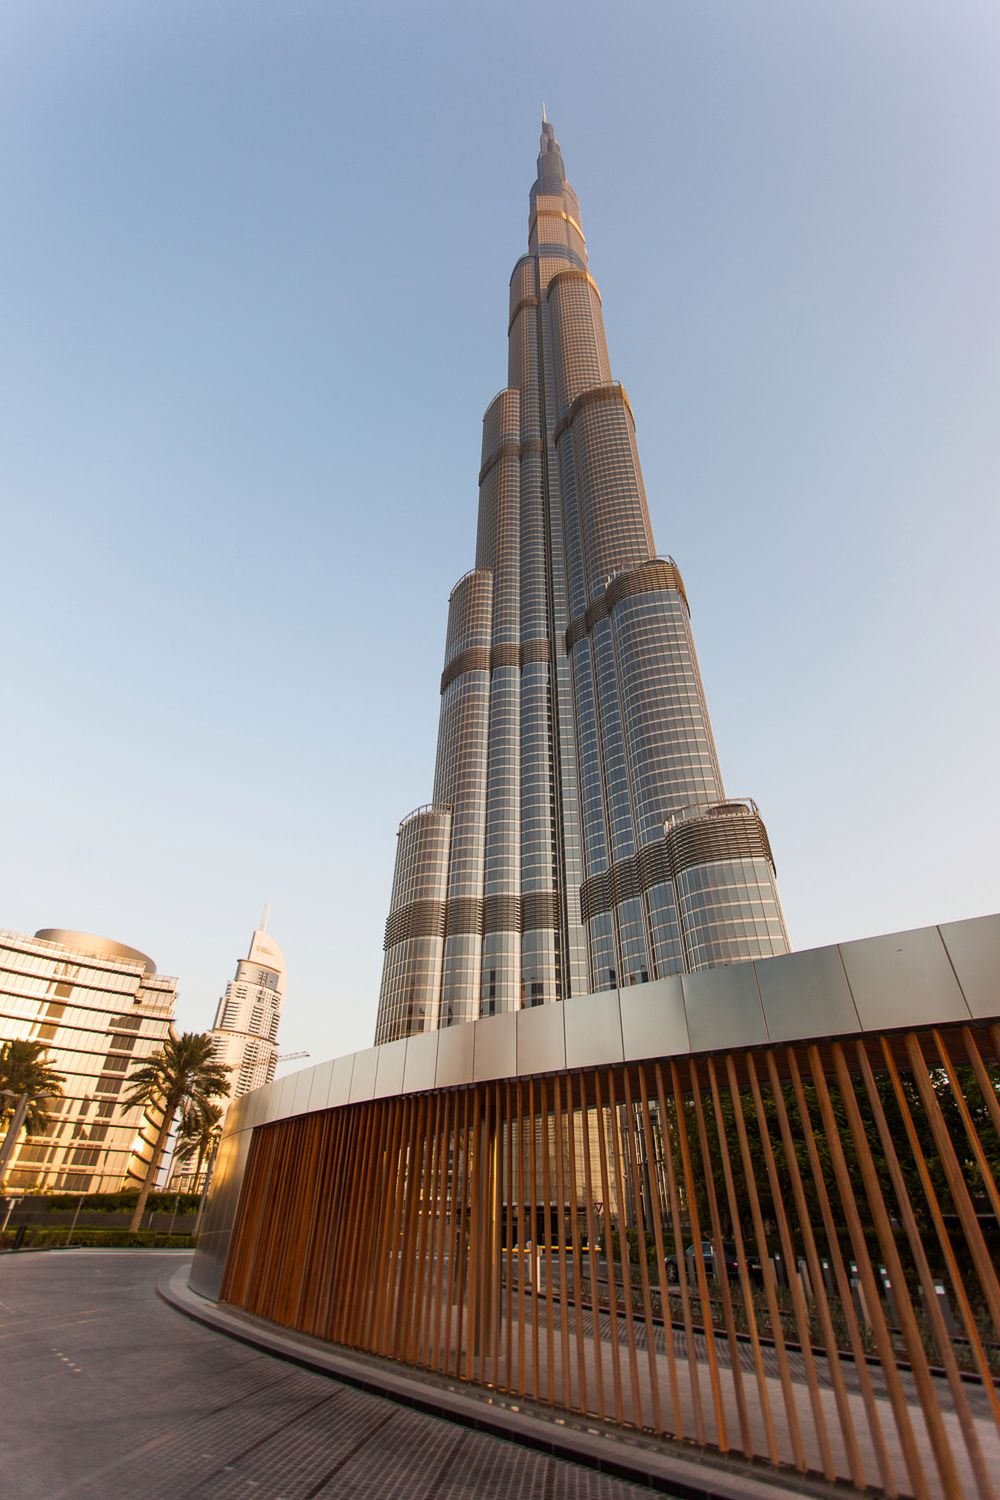 Burj Kfalifa widziana z kilkudziesięciu metrów. Canon 5D mark II, 17 mm, 1/200 s, f/4, ISO 100, 0.33EV